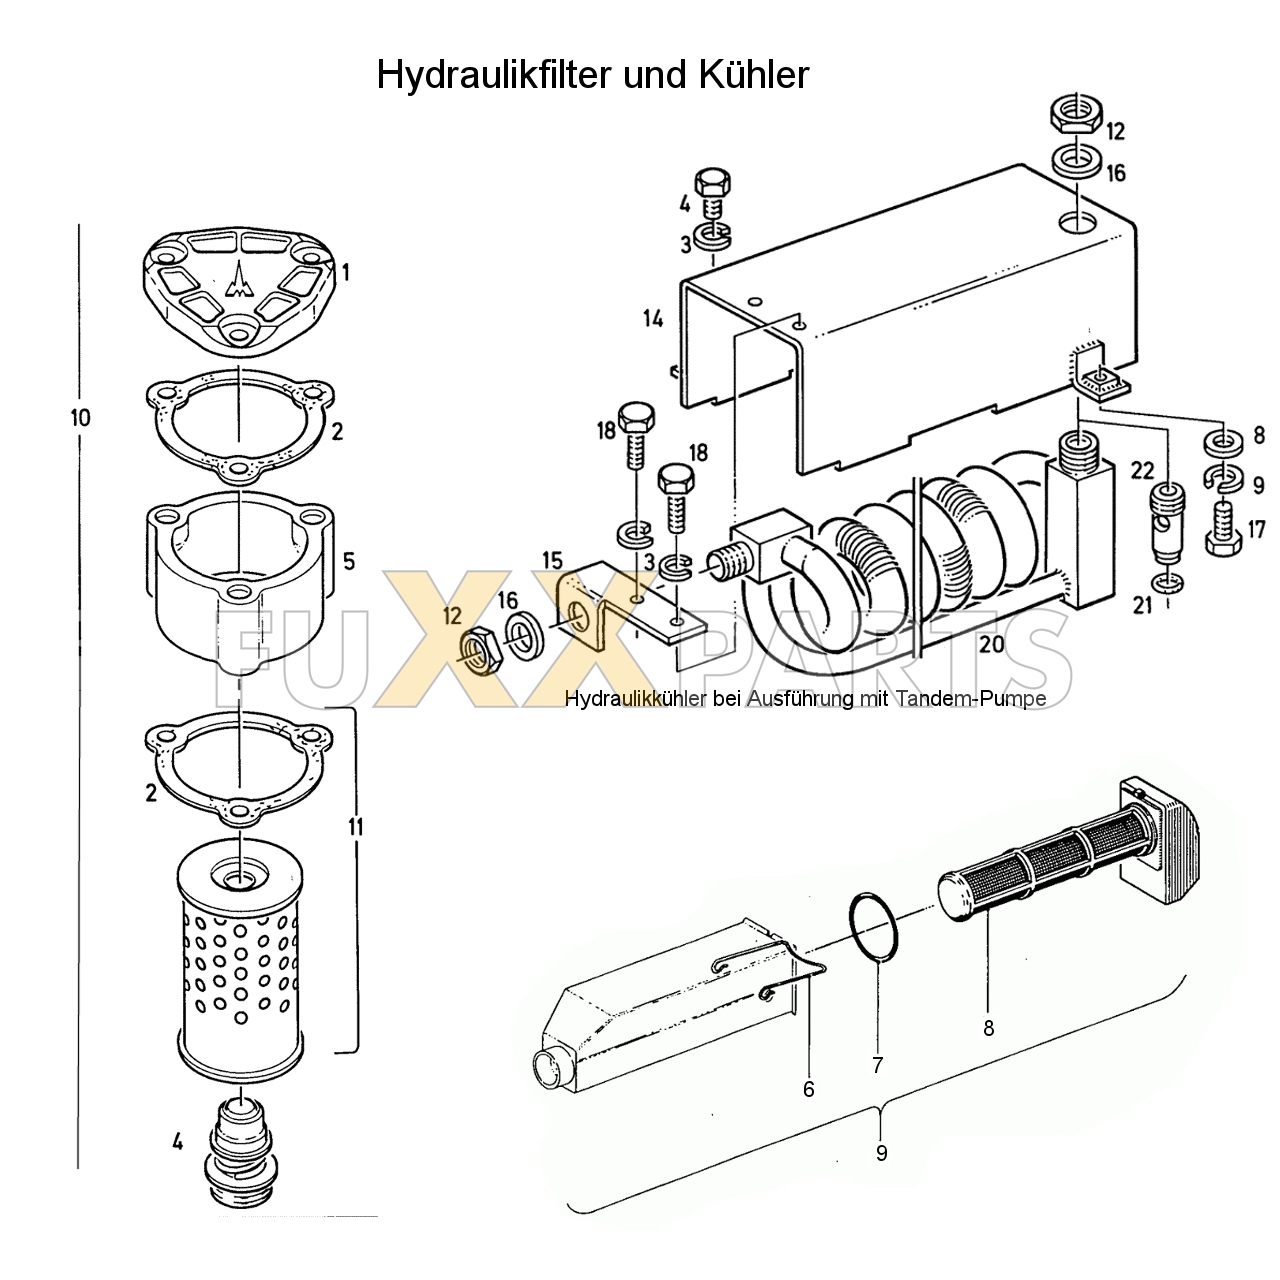 D 7207 Hydraulikfilter und Kühler